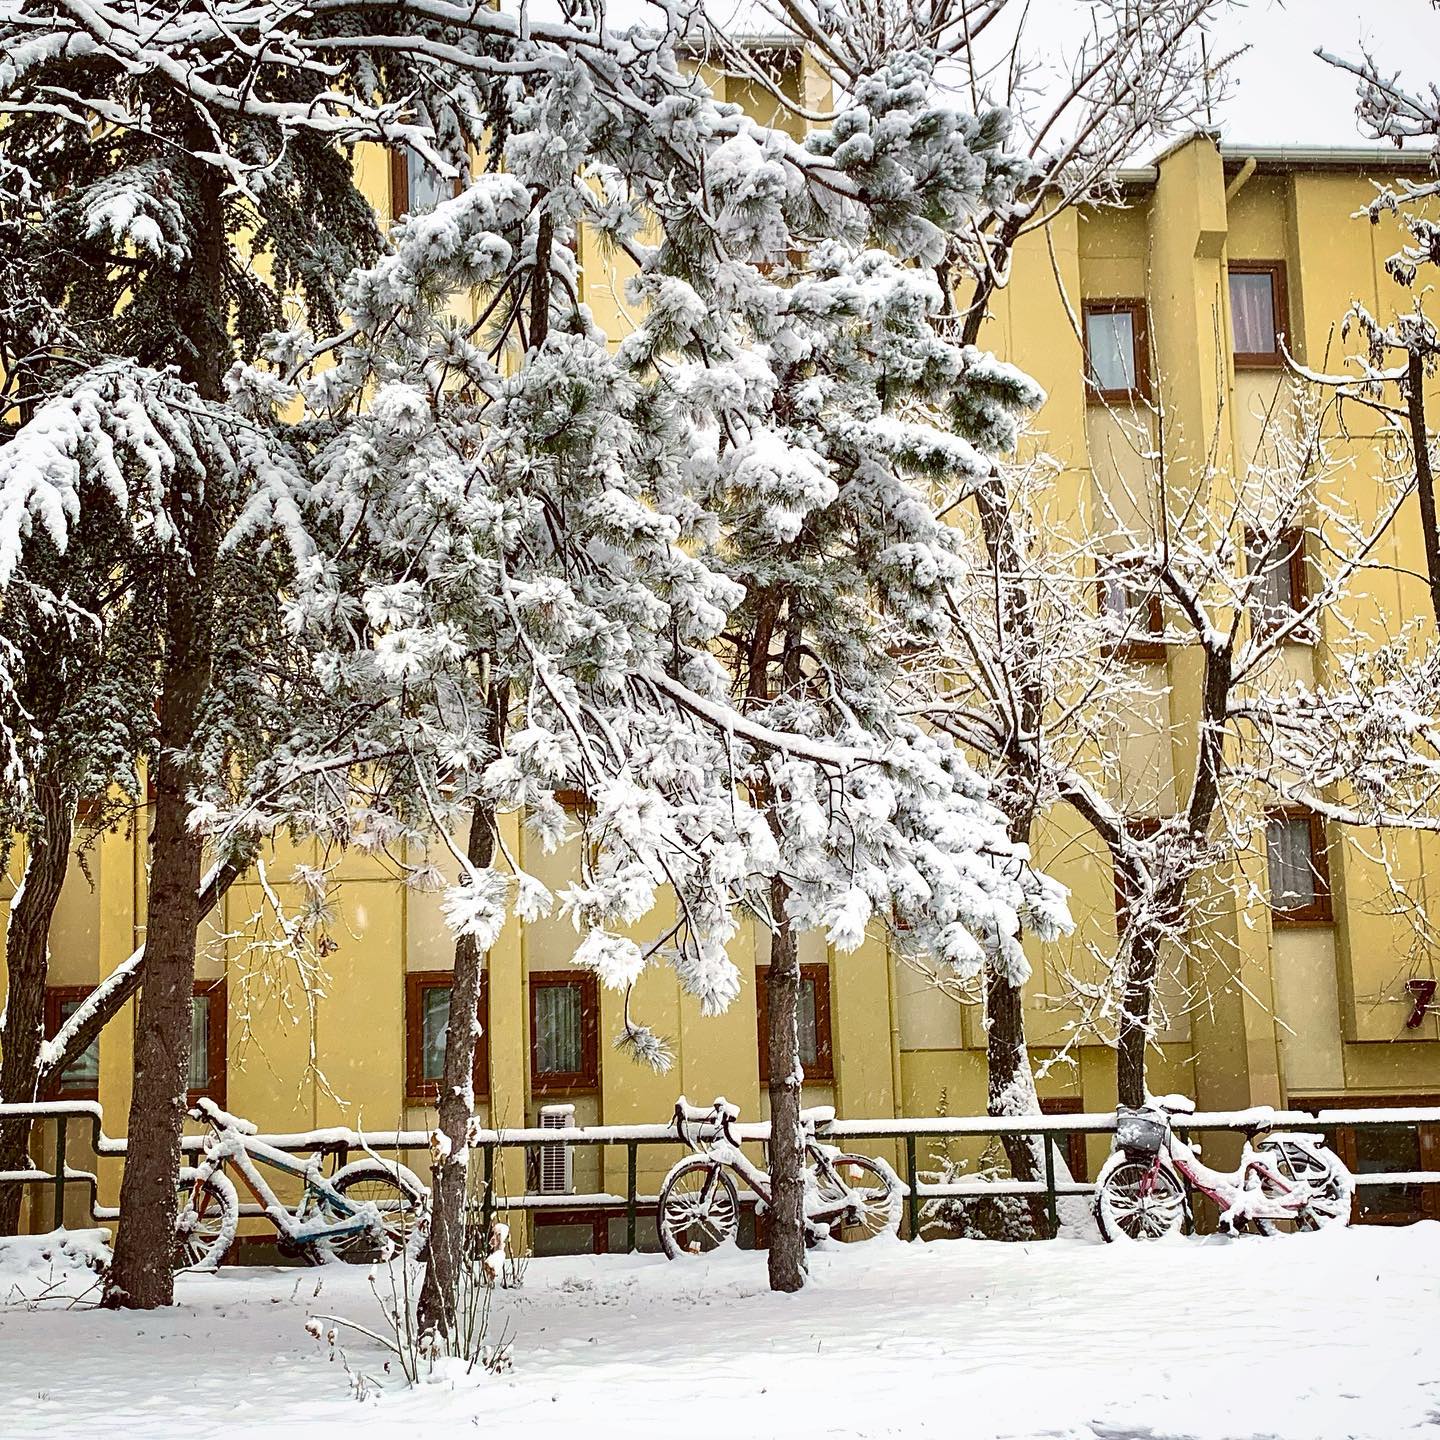 Şubat ayına karlı bir başlangıç 🥶

#bilkent #bilkentüniversitesi #bilkentuniversity